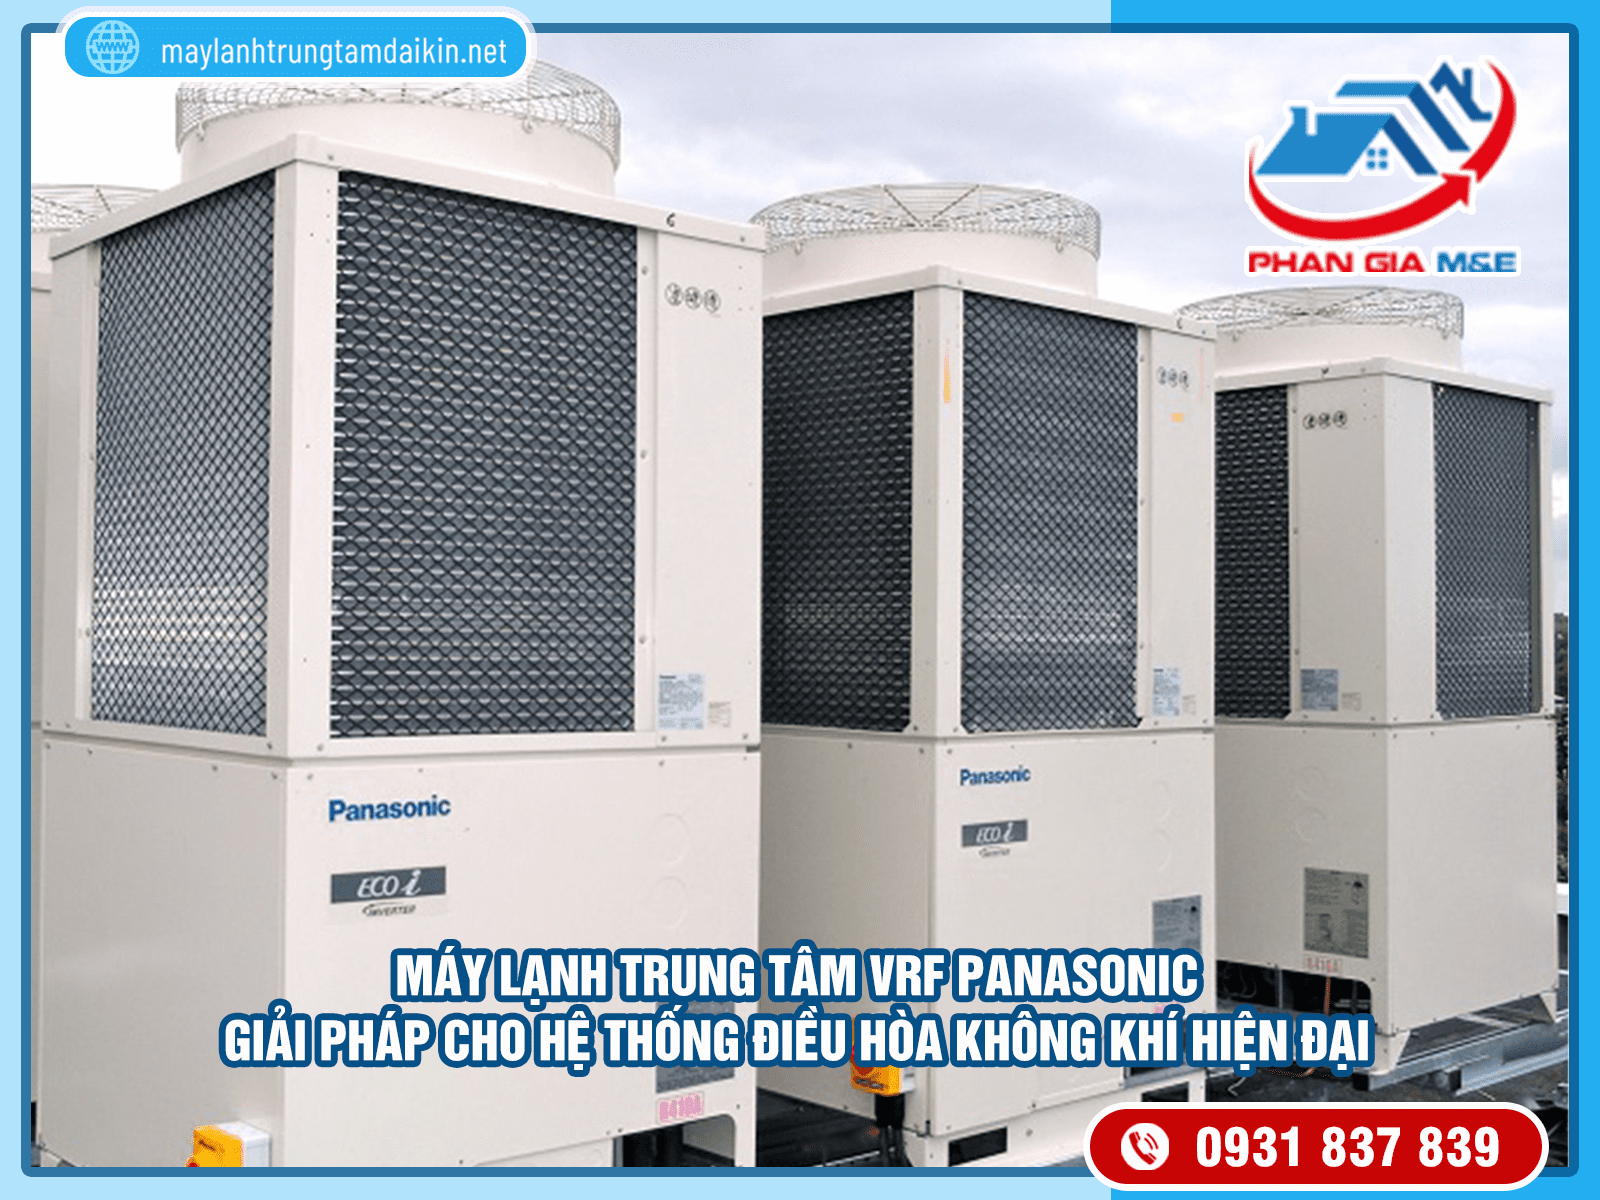 Máy lạnh trung tâm VRF Panasonic